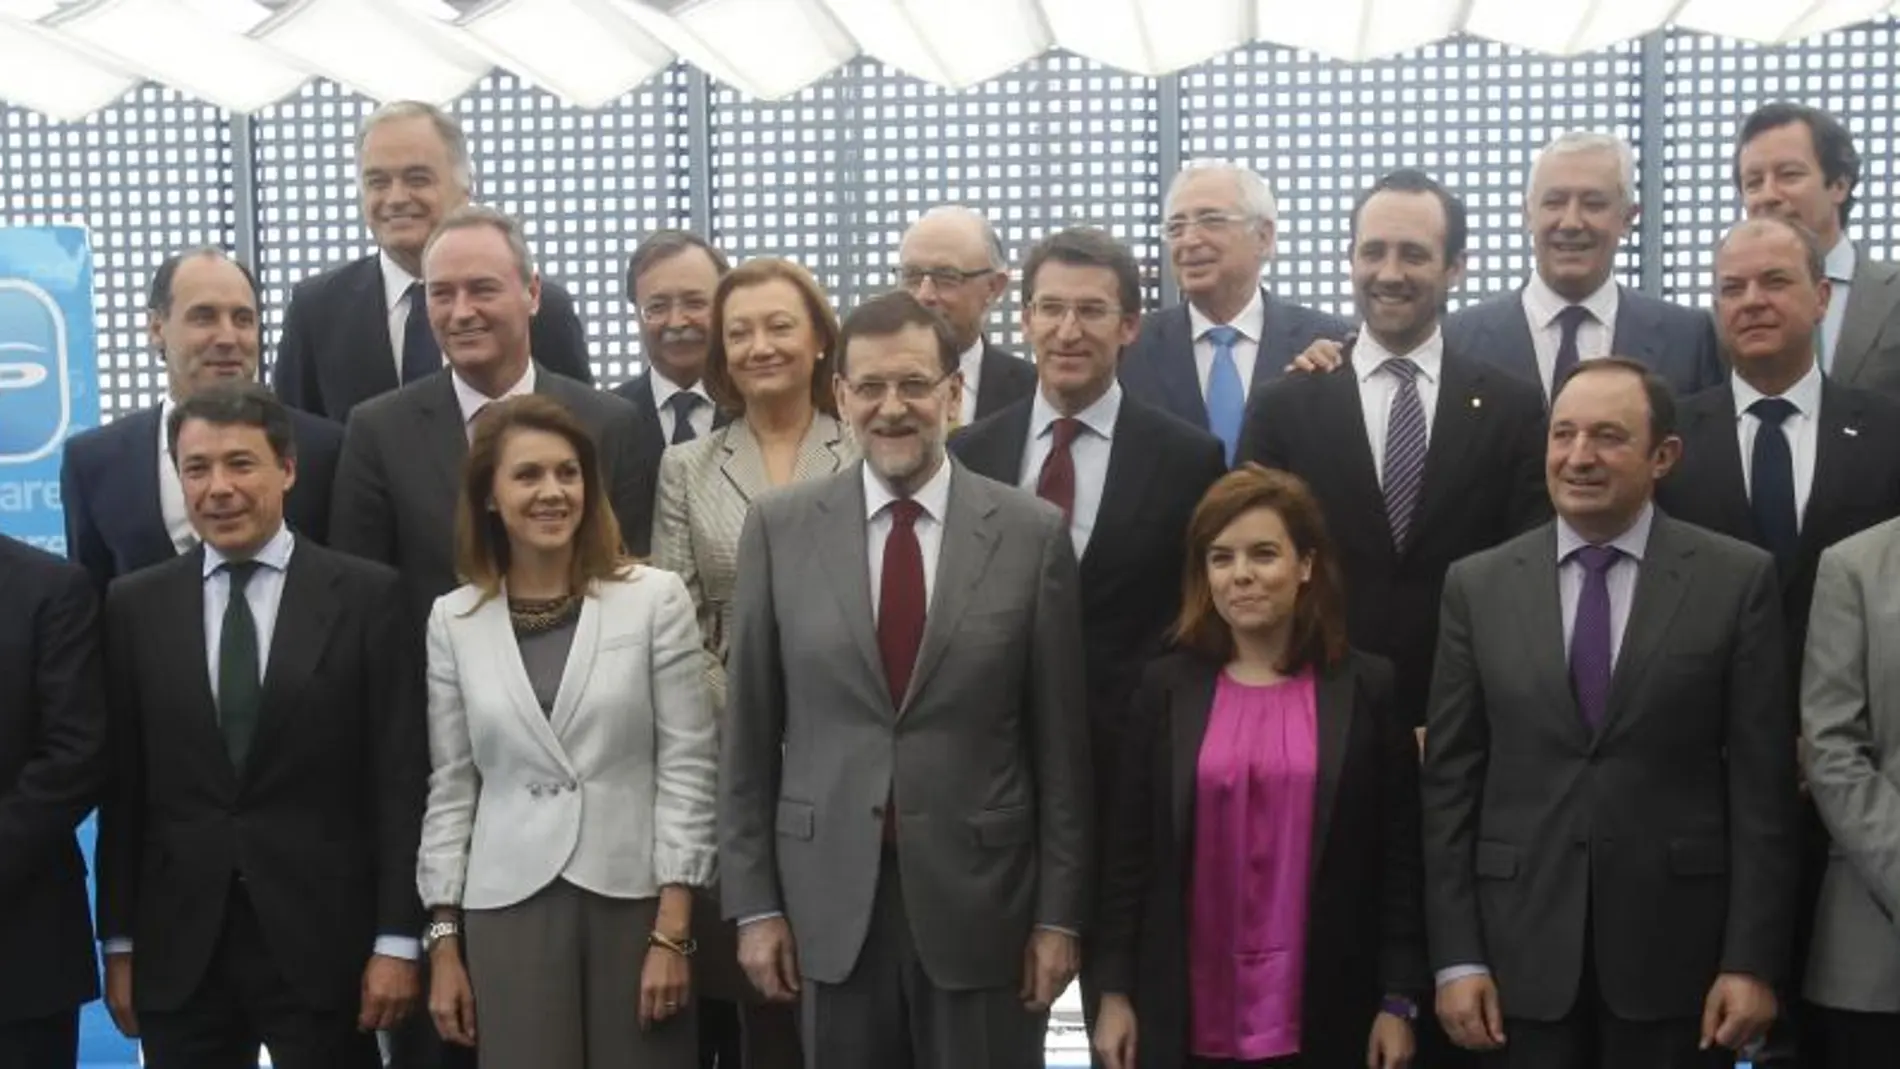 Rajoy y los líderes del PP antes de la reunión sobre el déficit